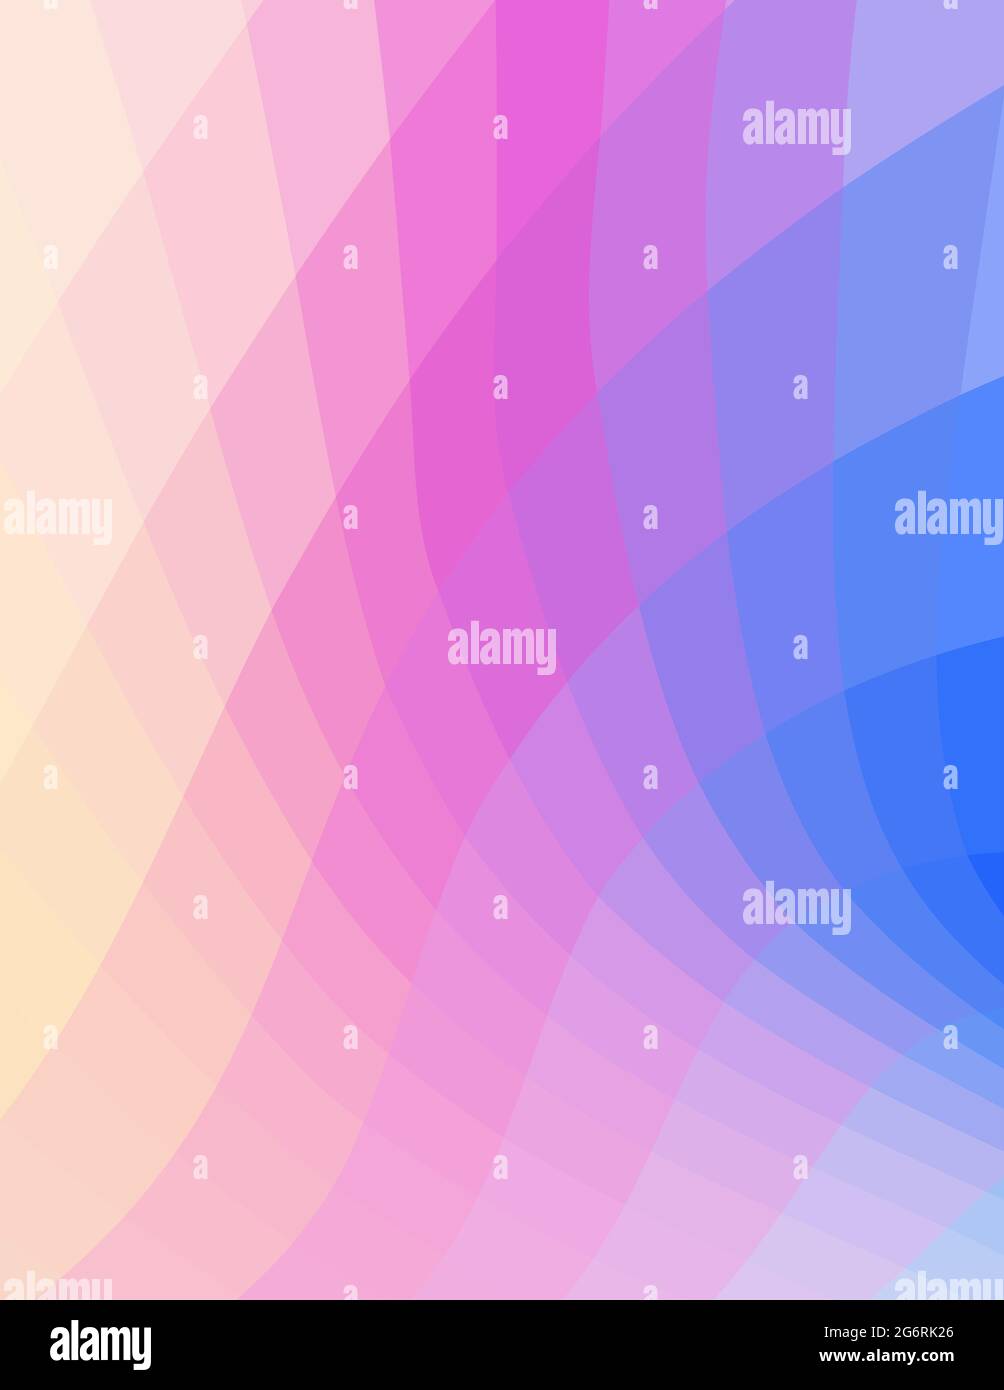 Abstrakter Hintergrund in Form eines Farbspektralmosaiks. Dezentes Rastergrafikmuster Stockfoto